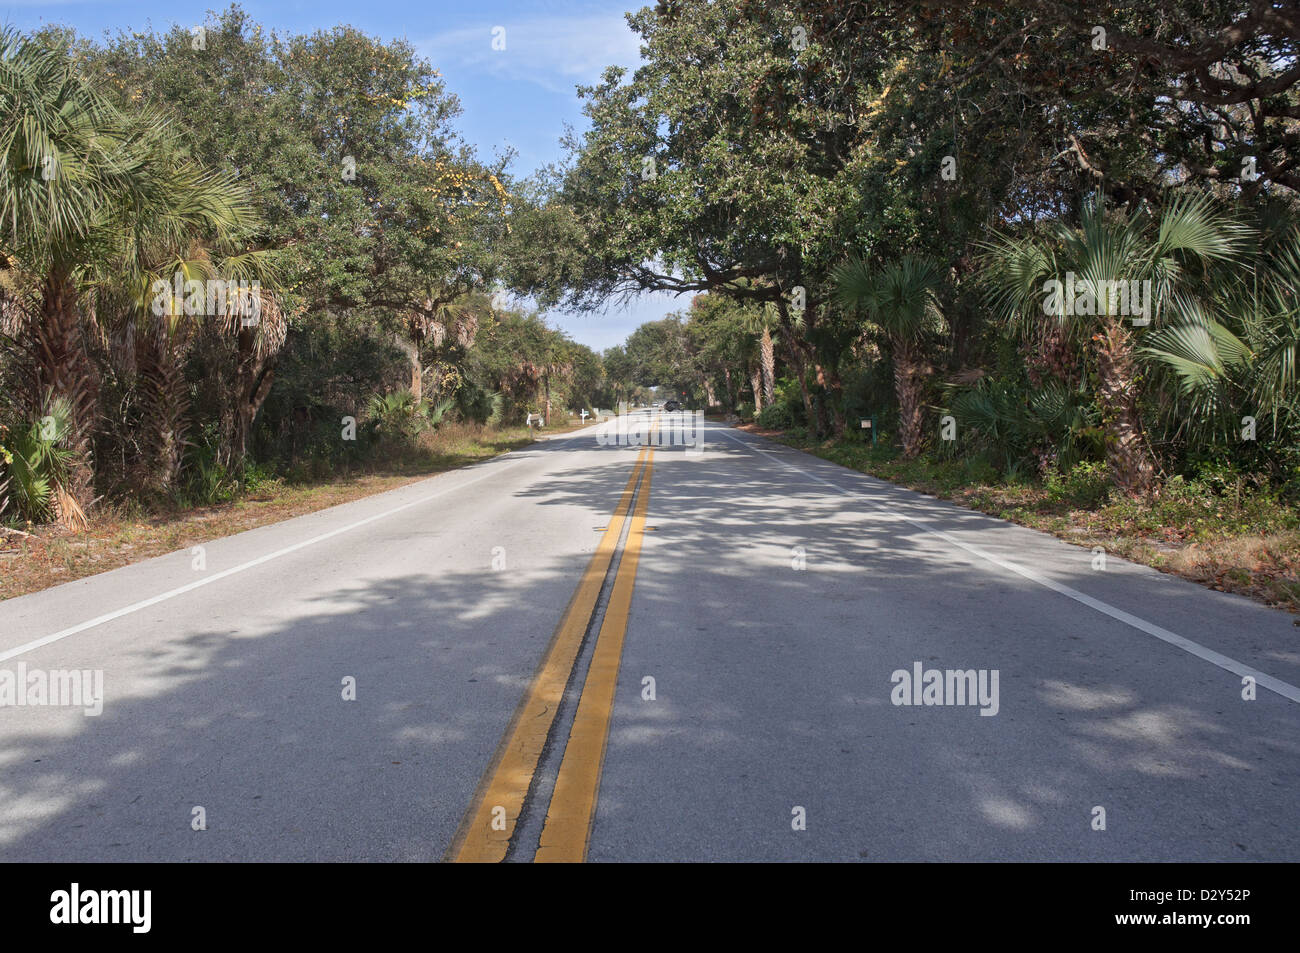 Lungo la storica strada costiera A1A in North Florida. Si tratta di un allevamento ufficialmente designato americana Byway. Foto Stock